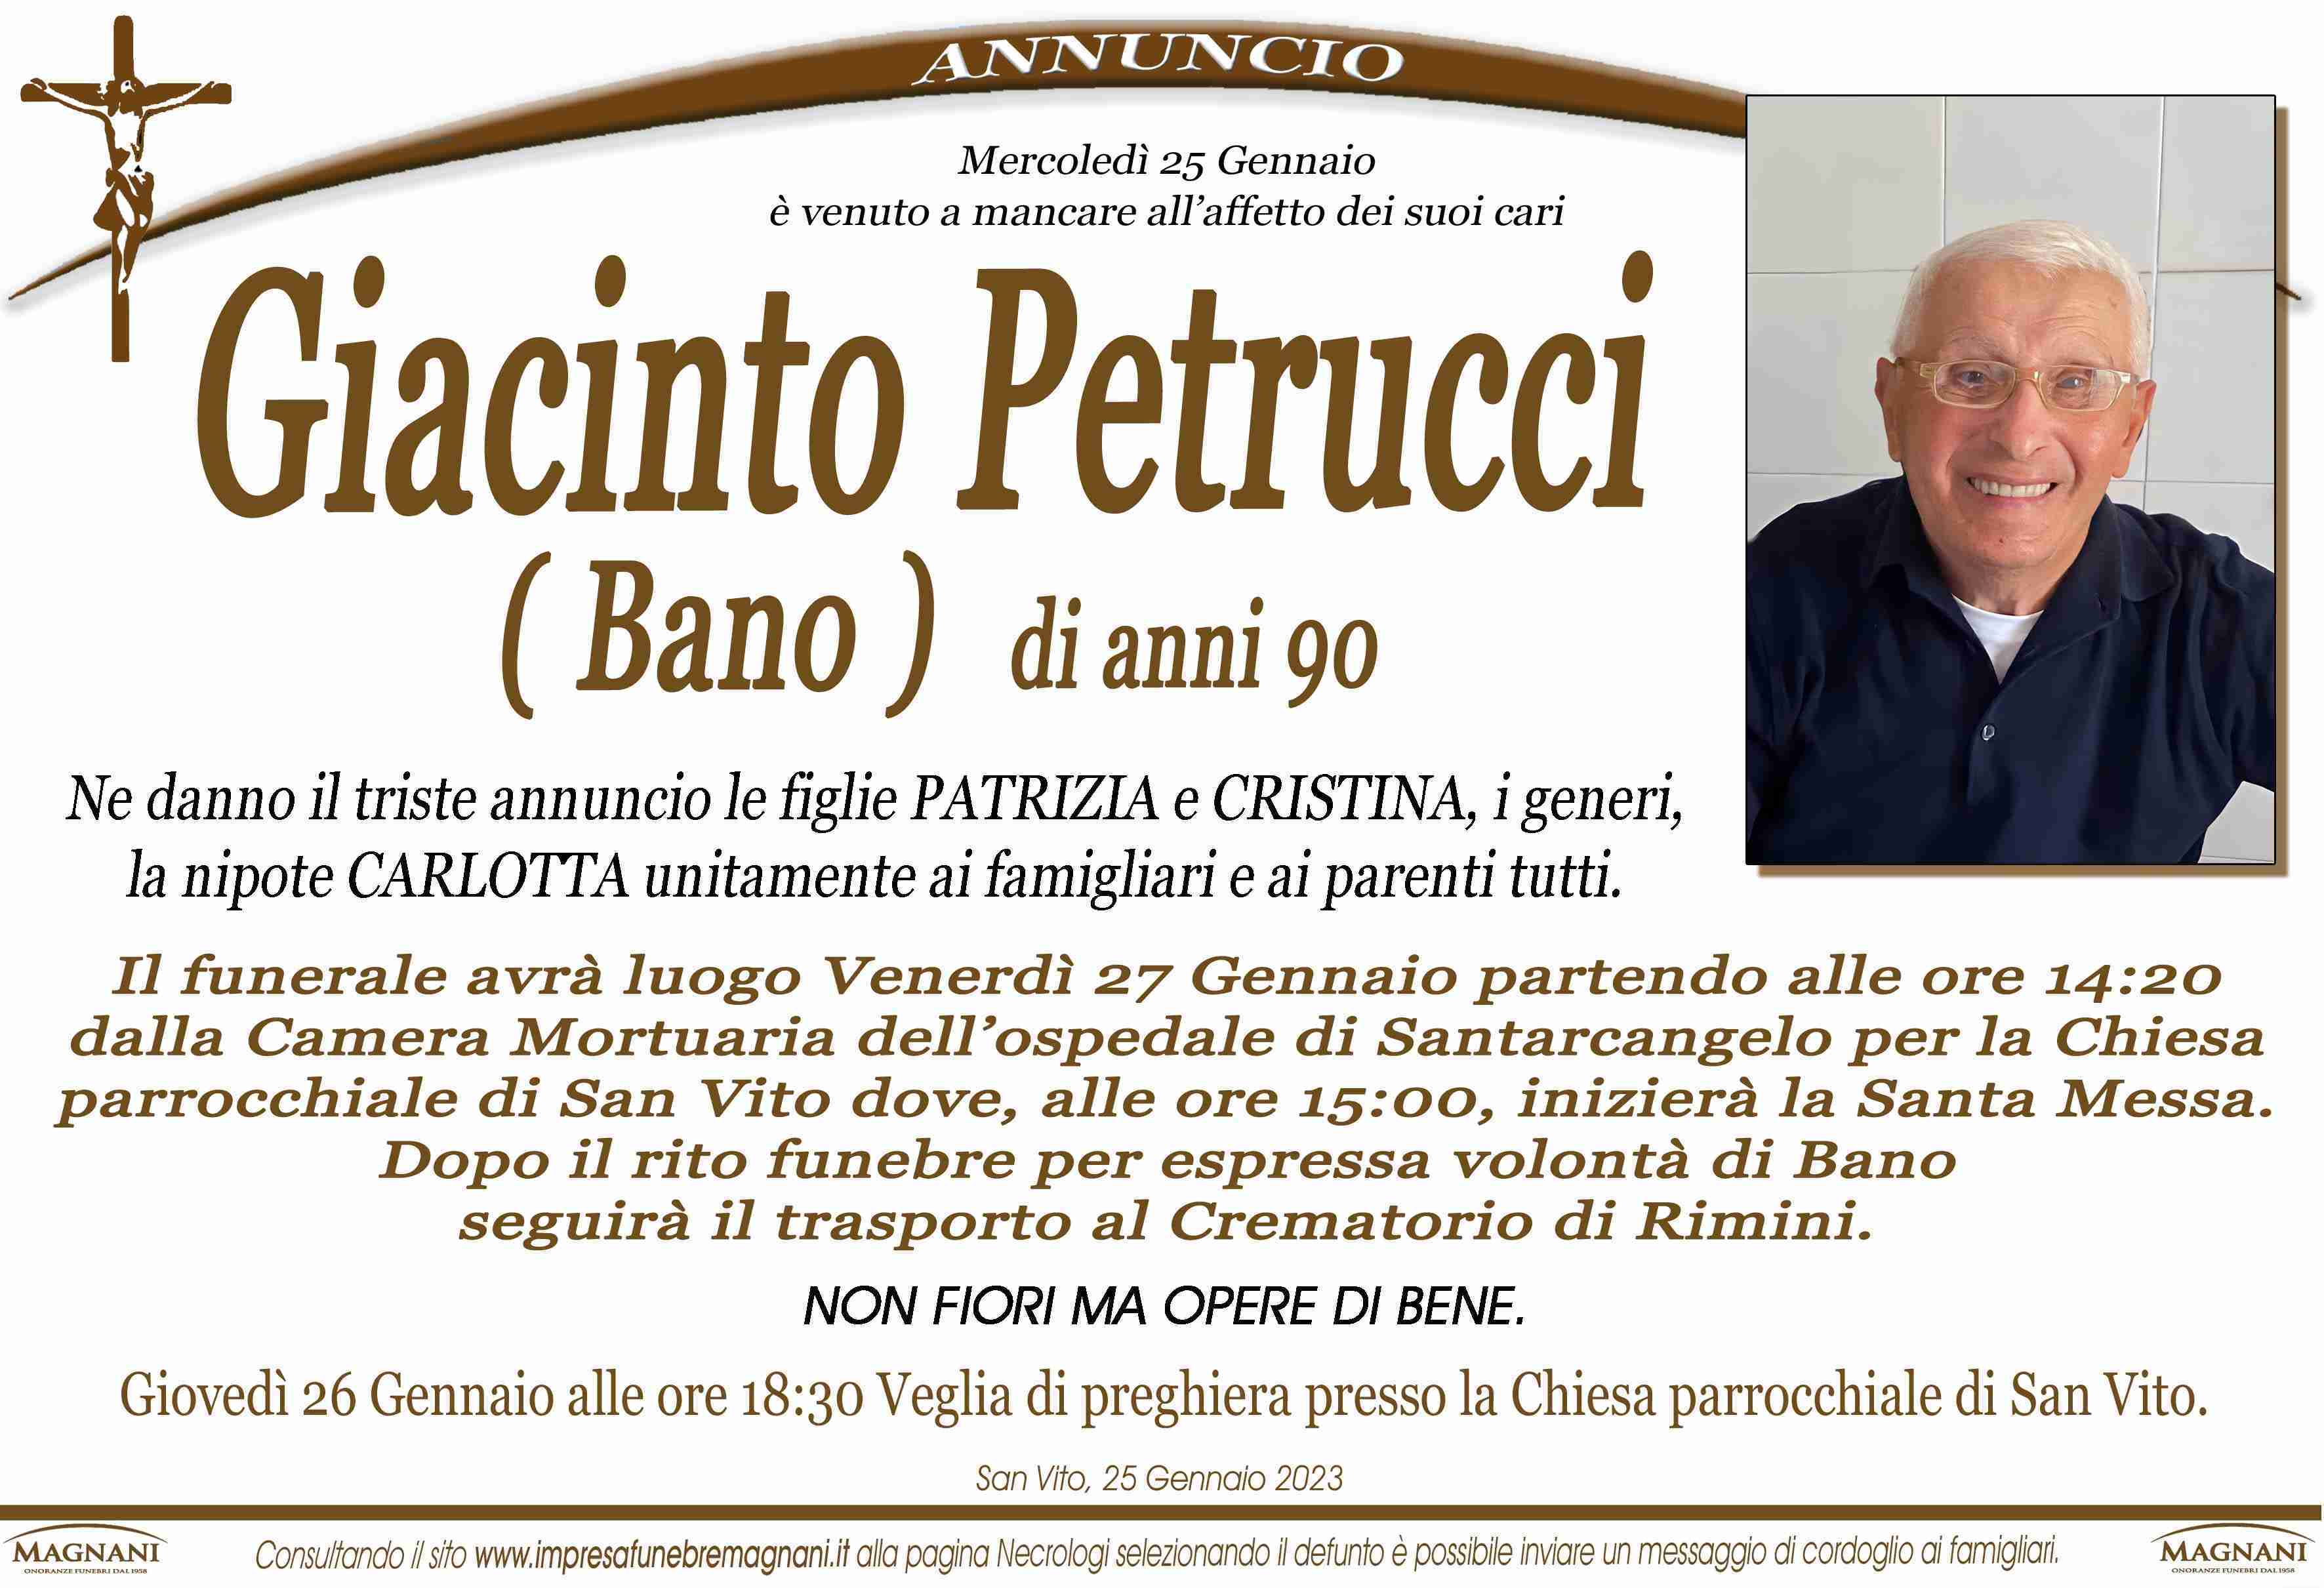 Giacinto Petrucci